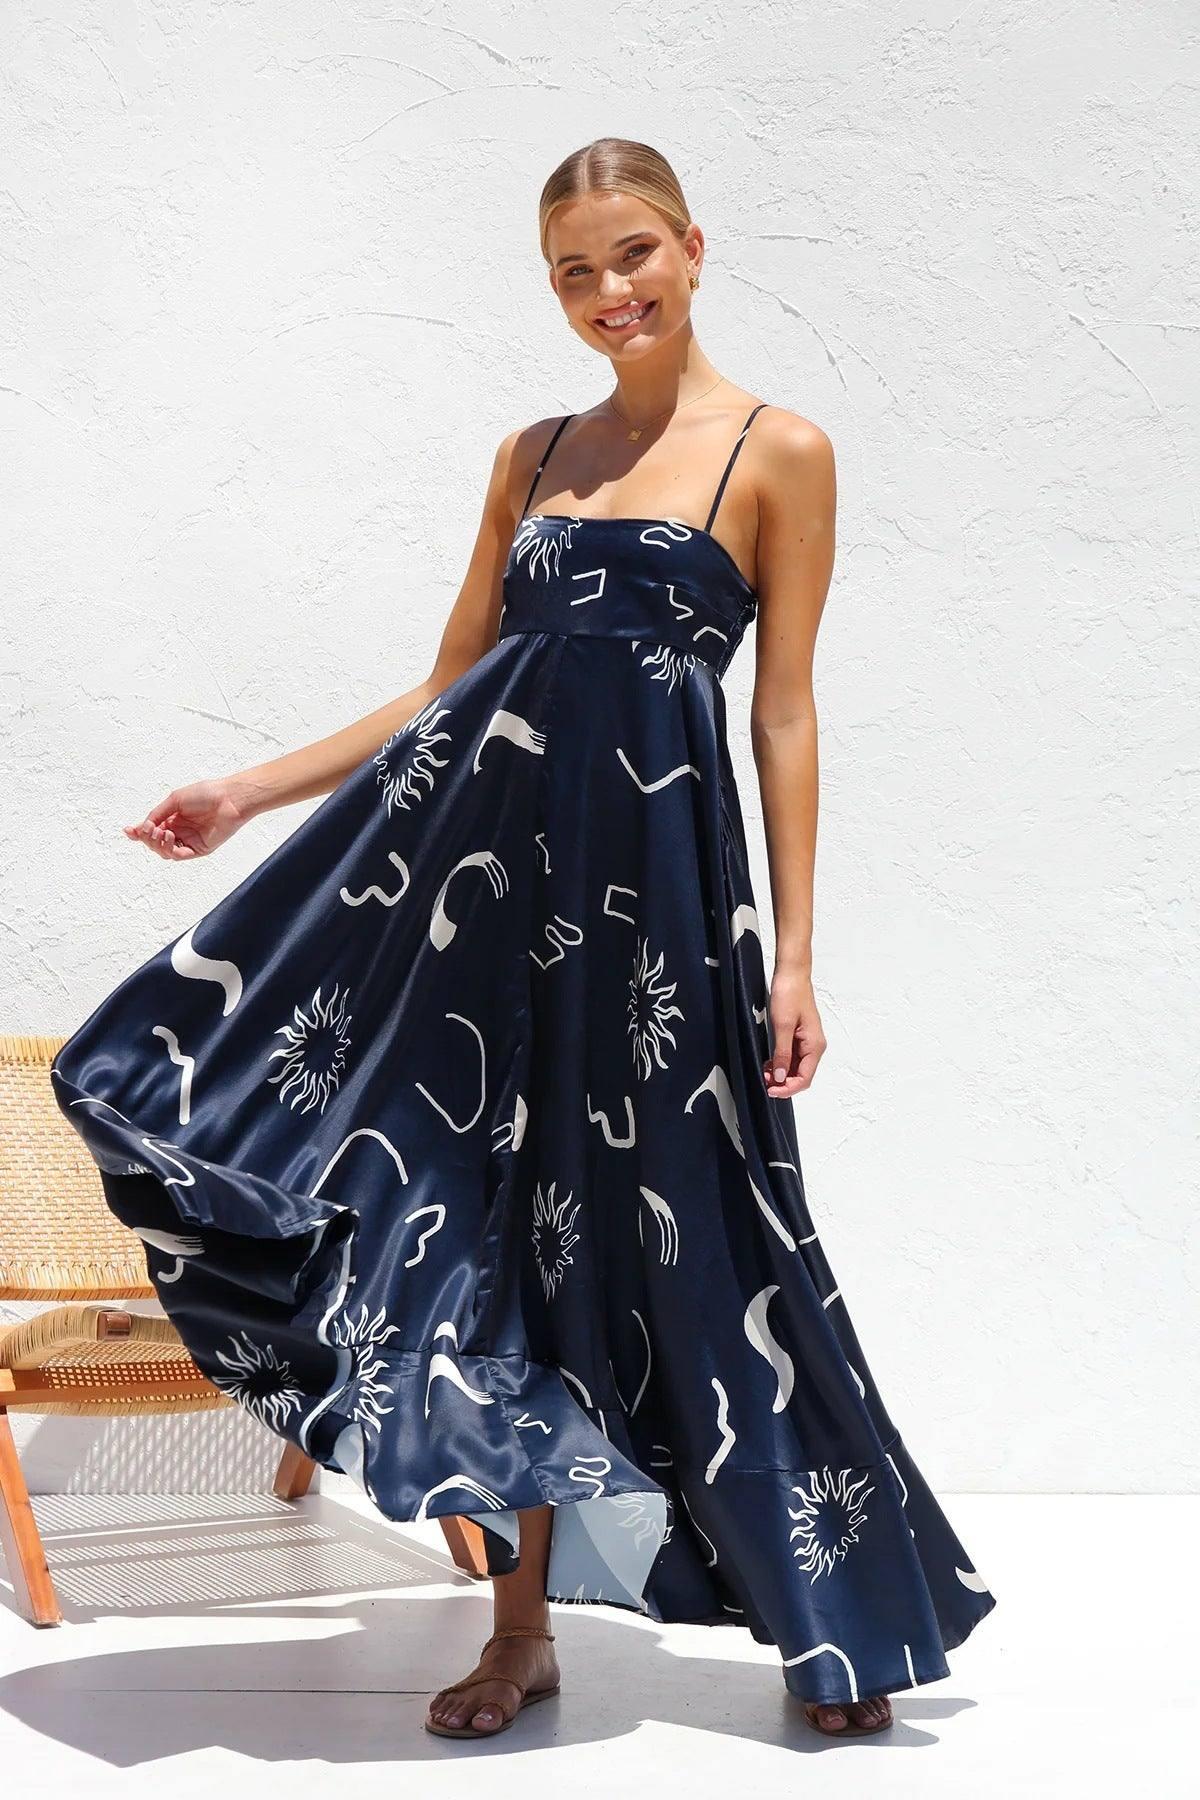 Floral Print Suspender Dress Summer Slim Fit Long Dresses-Navy Blue-7